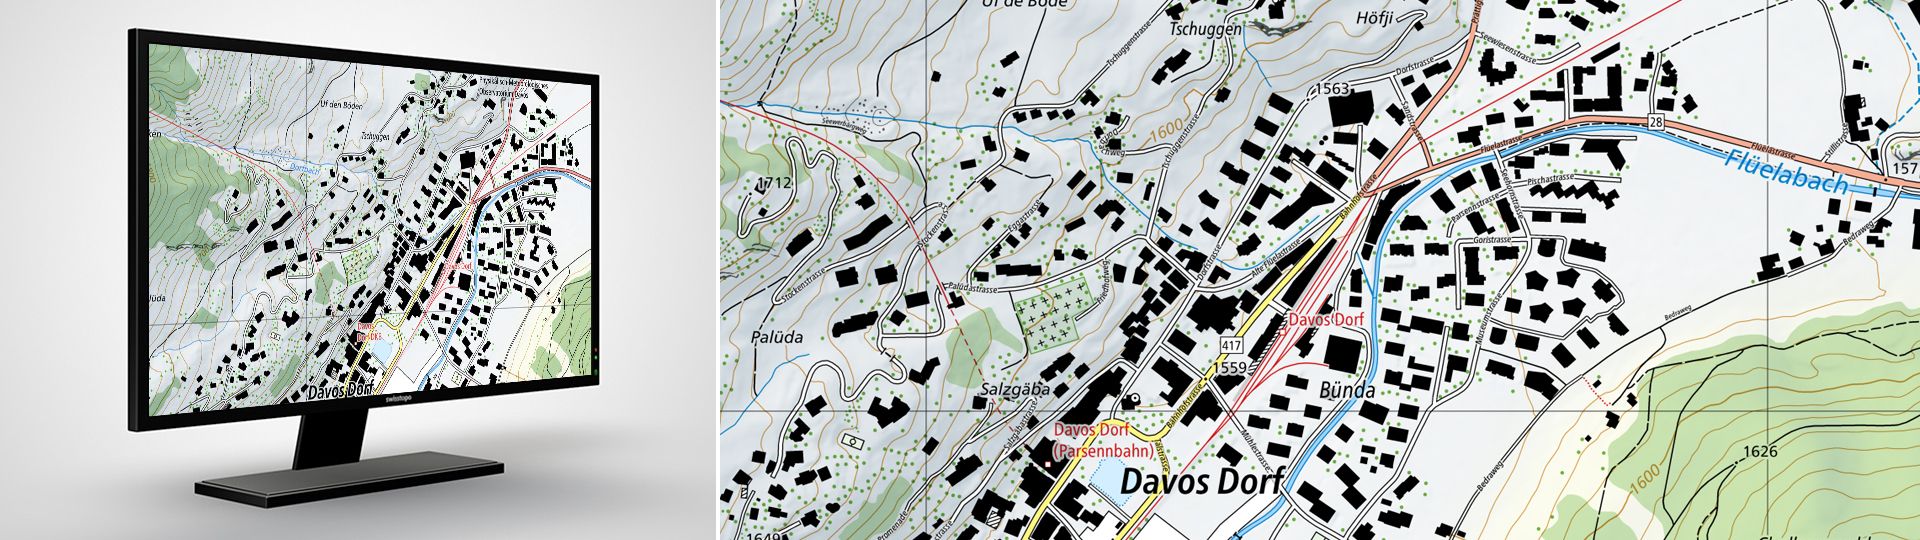 Swiss Map Raster 10: Digitale Landeskarten der Schweiz im Rasterformat 1:10 000